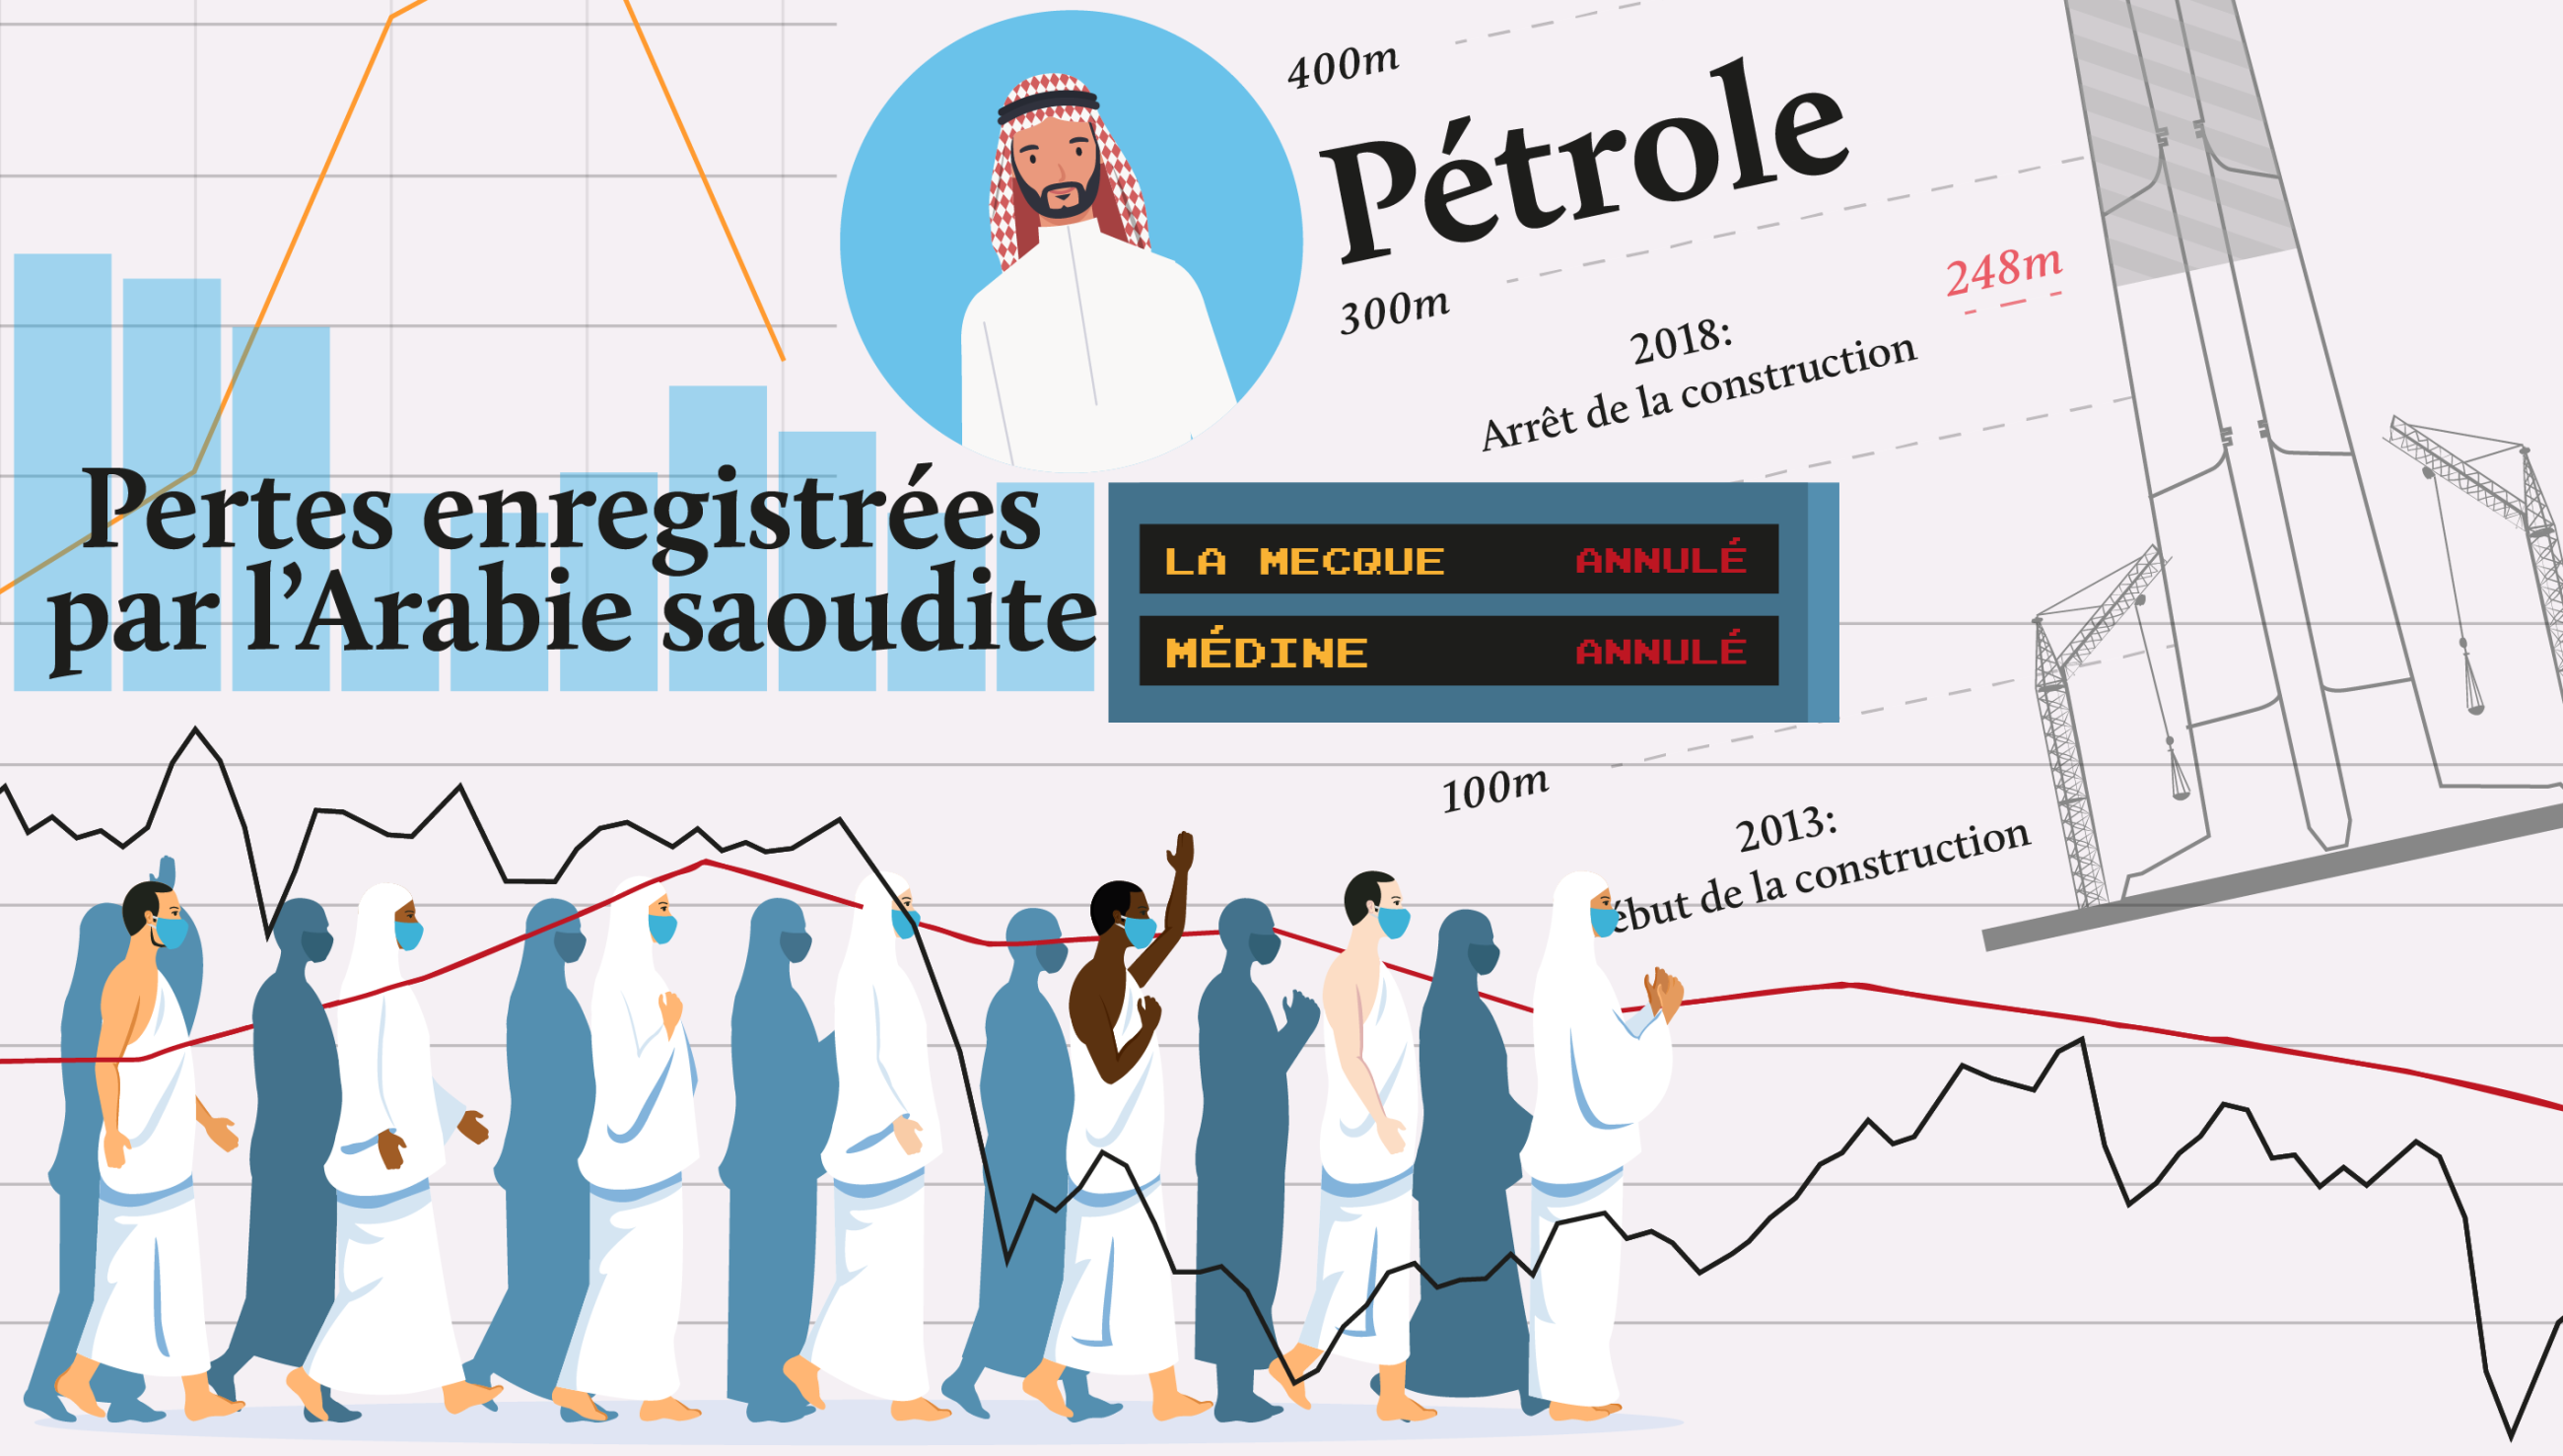 L’Arabie saoudite a subi un manque à gagner de plusieurs milliards d’euros avec l’annulation du hadj et de la oumra en raison du COVID-19 (MEE/illustration de Mohamad Elaasar)